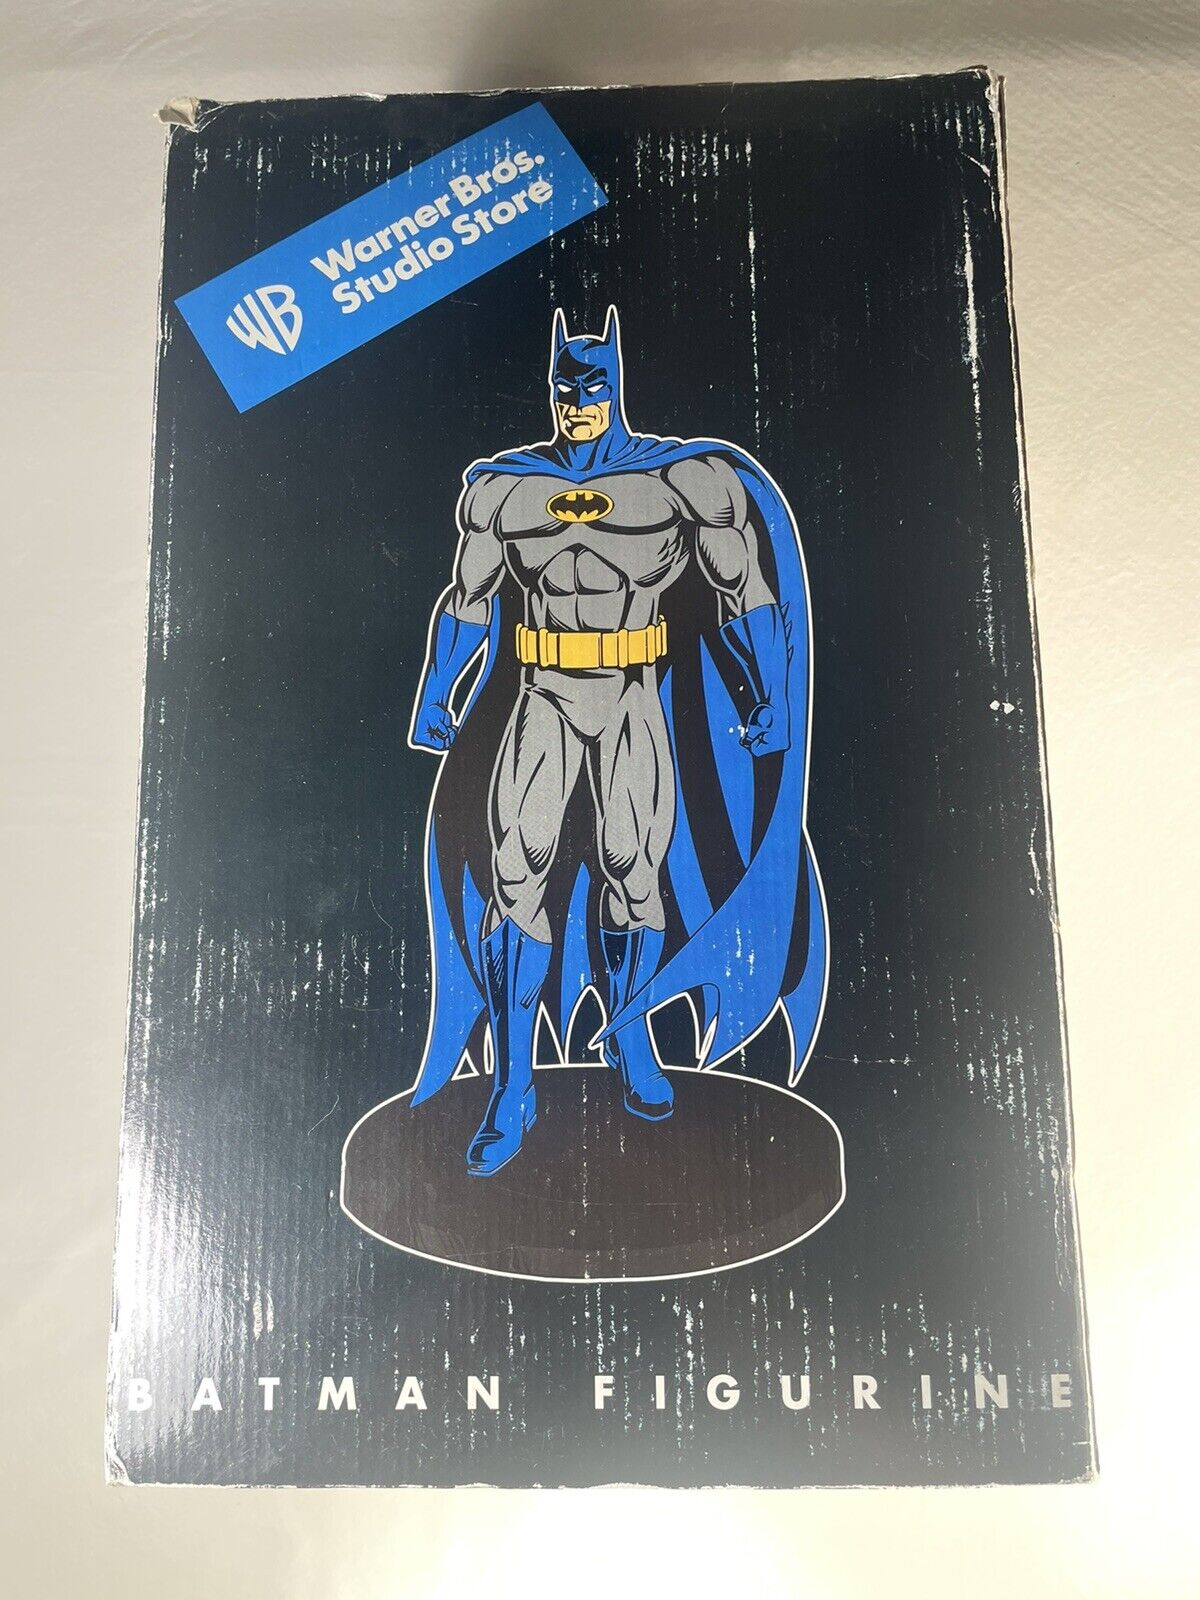 BATMAN Warner Bros. WB Studio Store Statue DC Comics 1998